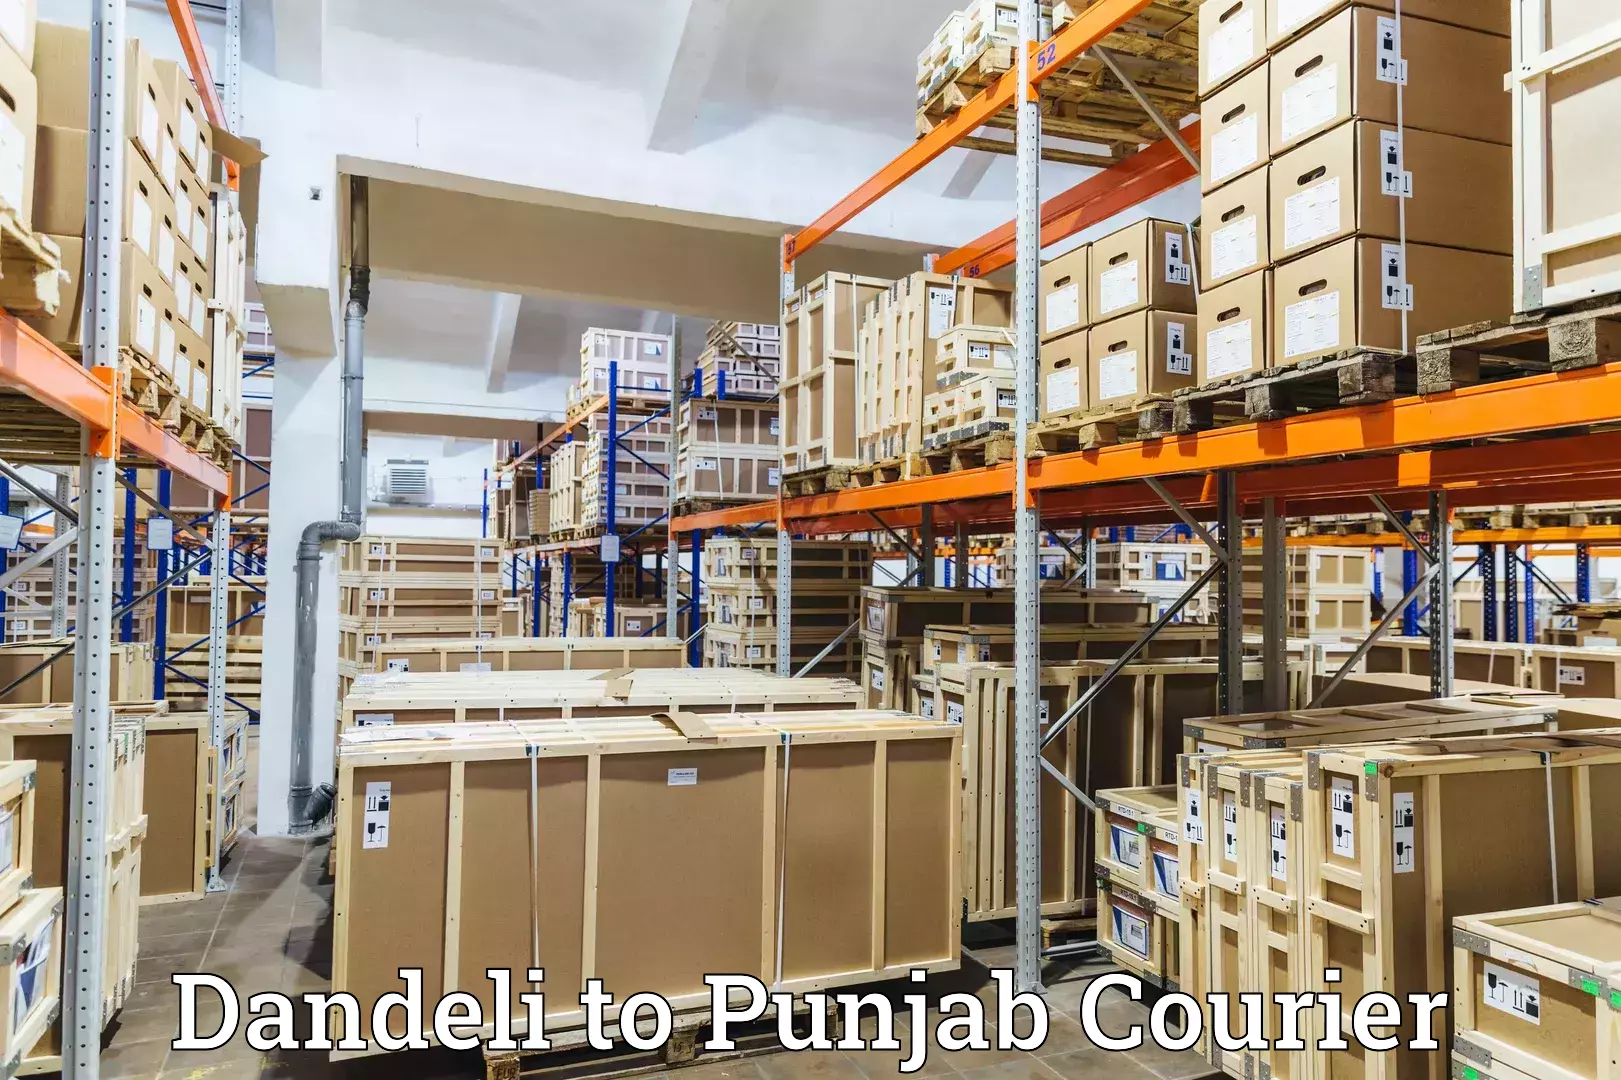 Dynamic parcel delivery Dandeli to Central University of Punjab Bathinda